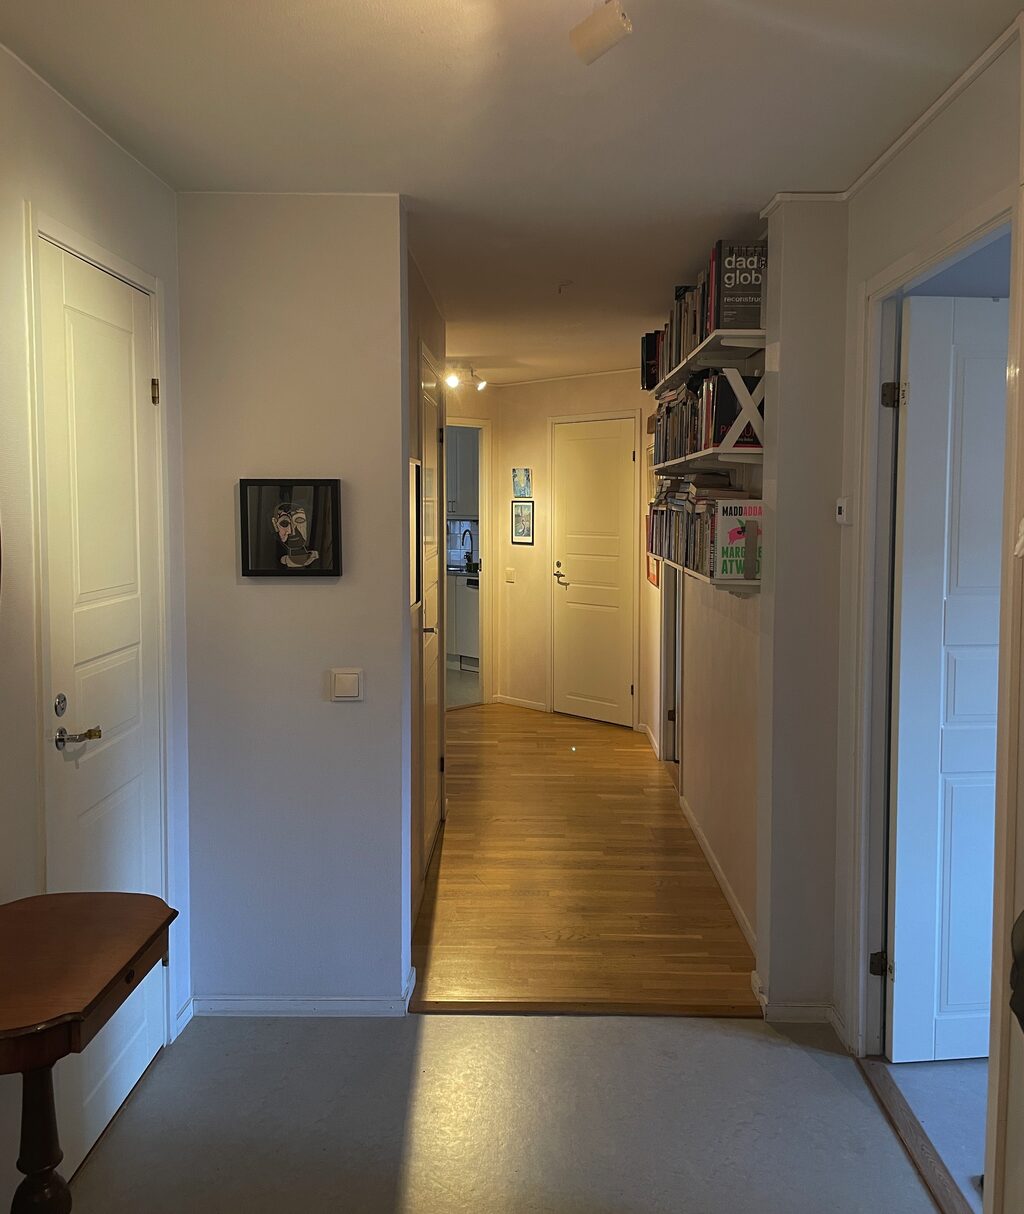 Lägenhetsbyte - Carl Alberts gränd 1, 118 27 Stockholm